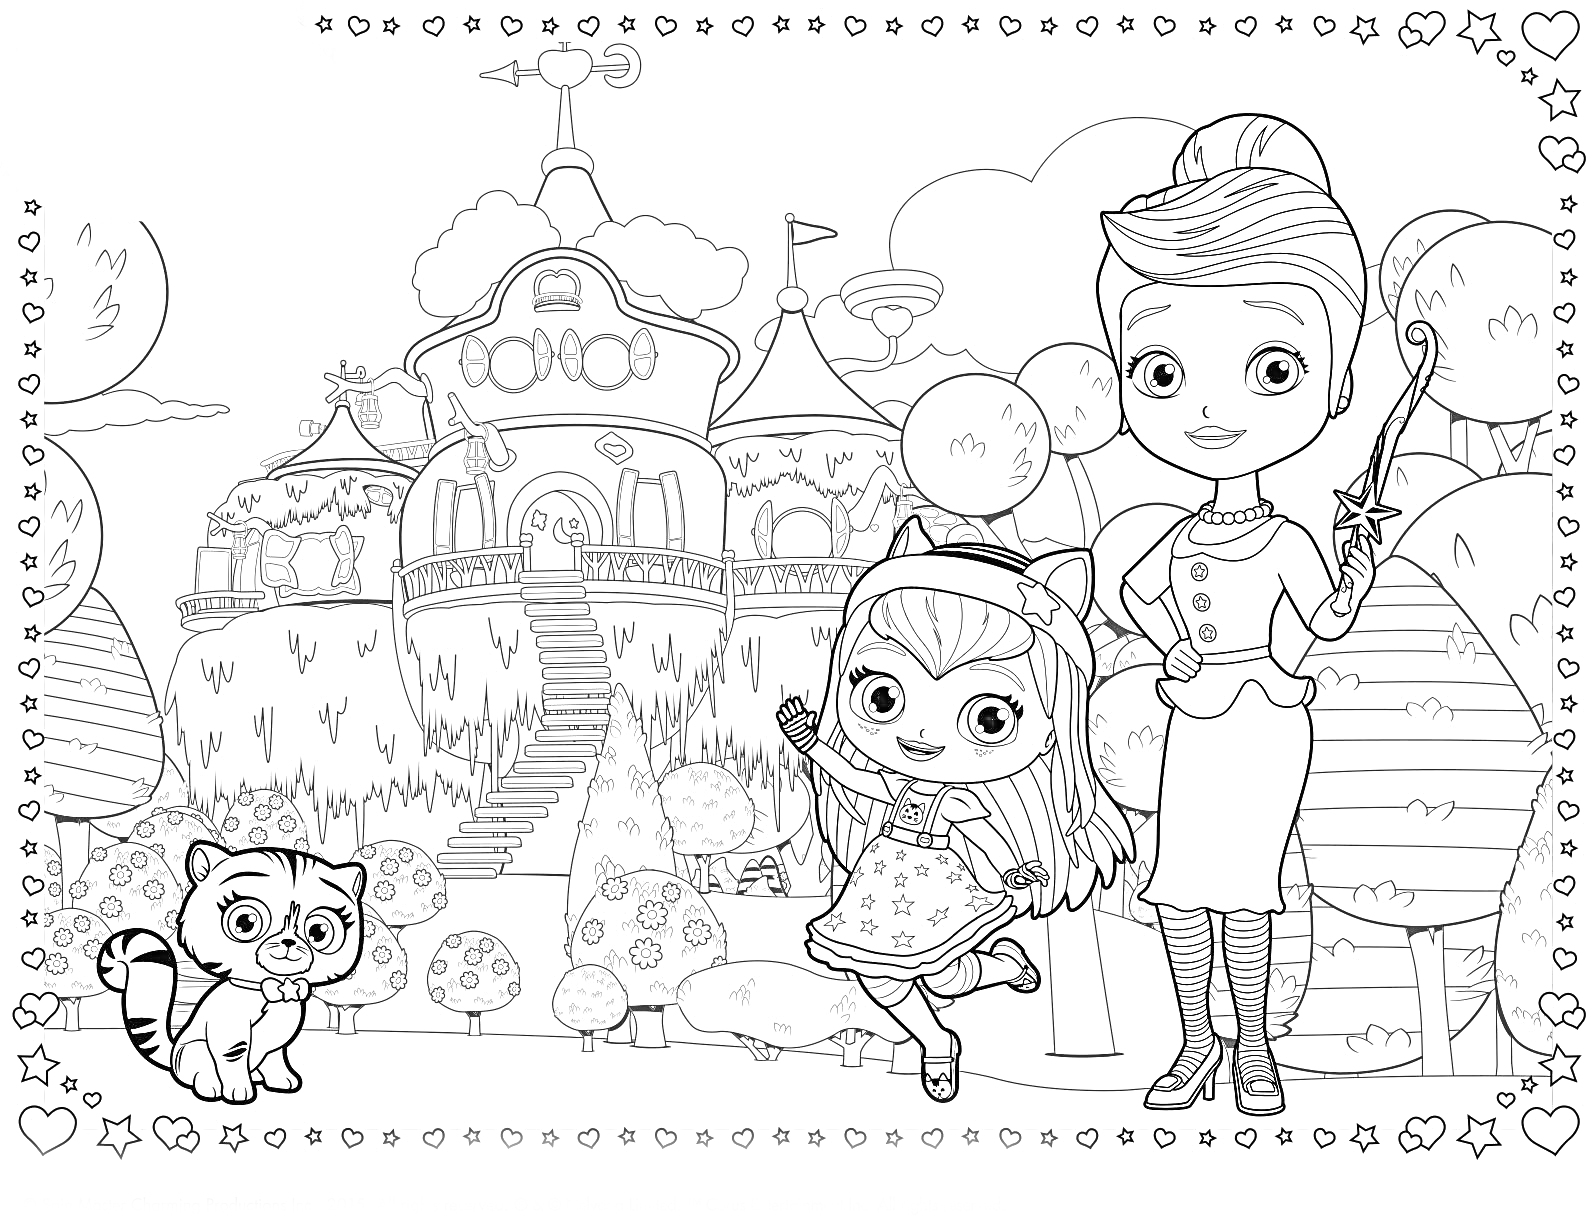 Две девочки с волшебными палочками на фоне замка, кошка, деревья и воздушные шары